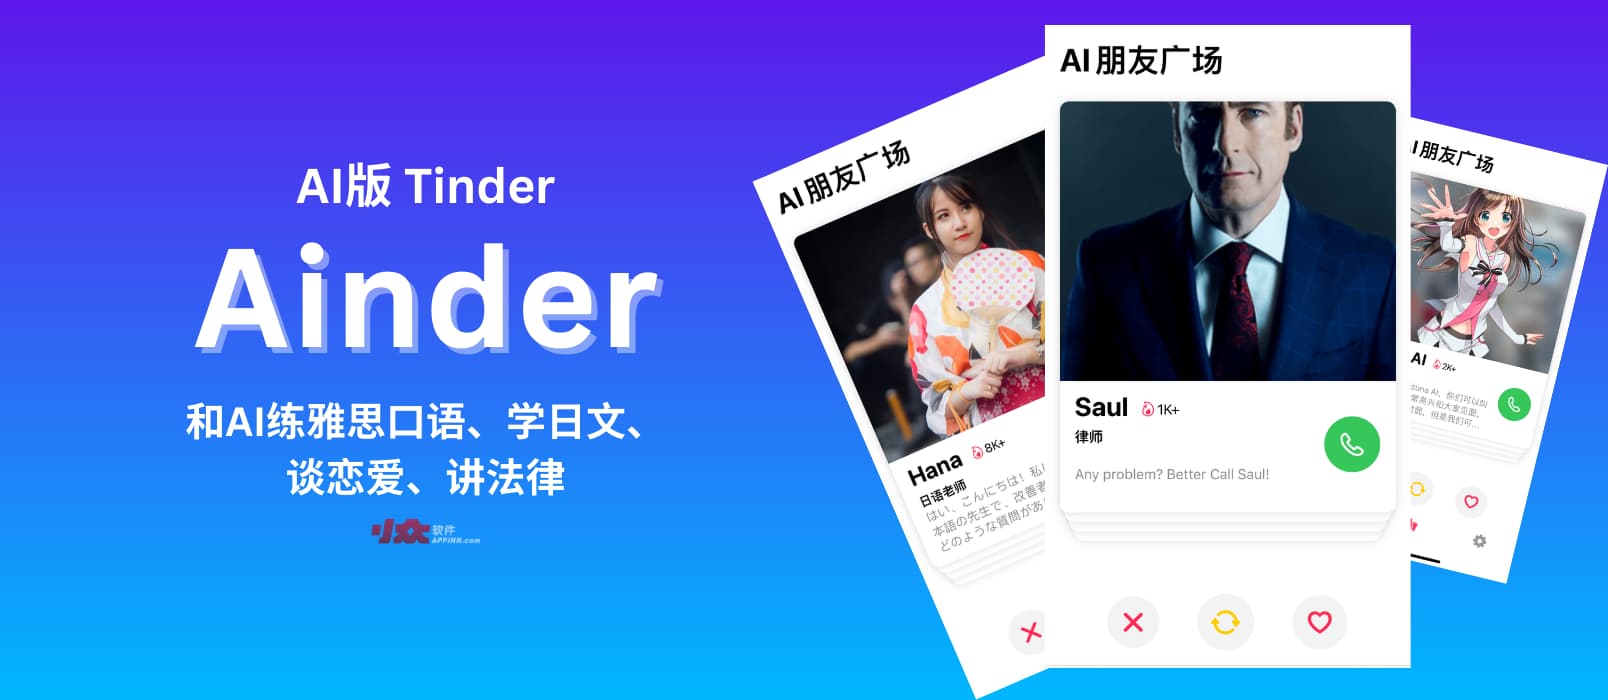 揭秘 AI 版 Tinder 应用 Ainder，你猜我在里面遇见了谁？